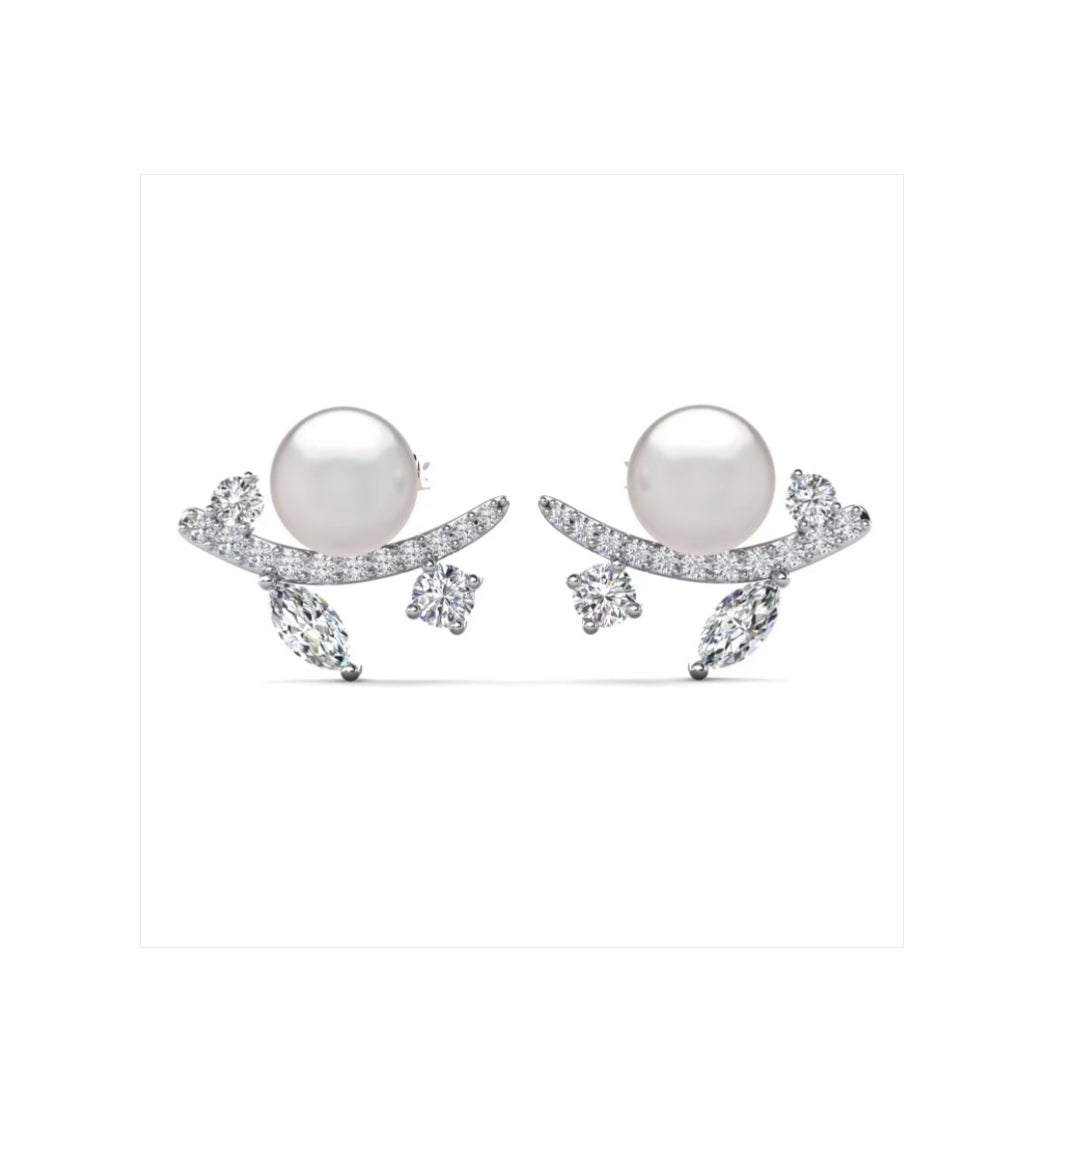 Leaf motif pearl earrings